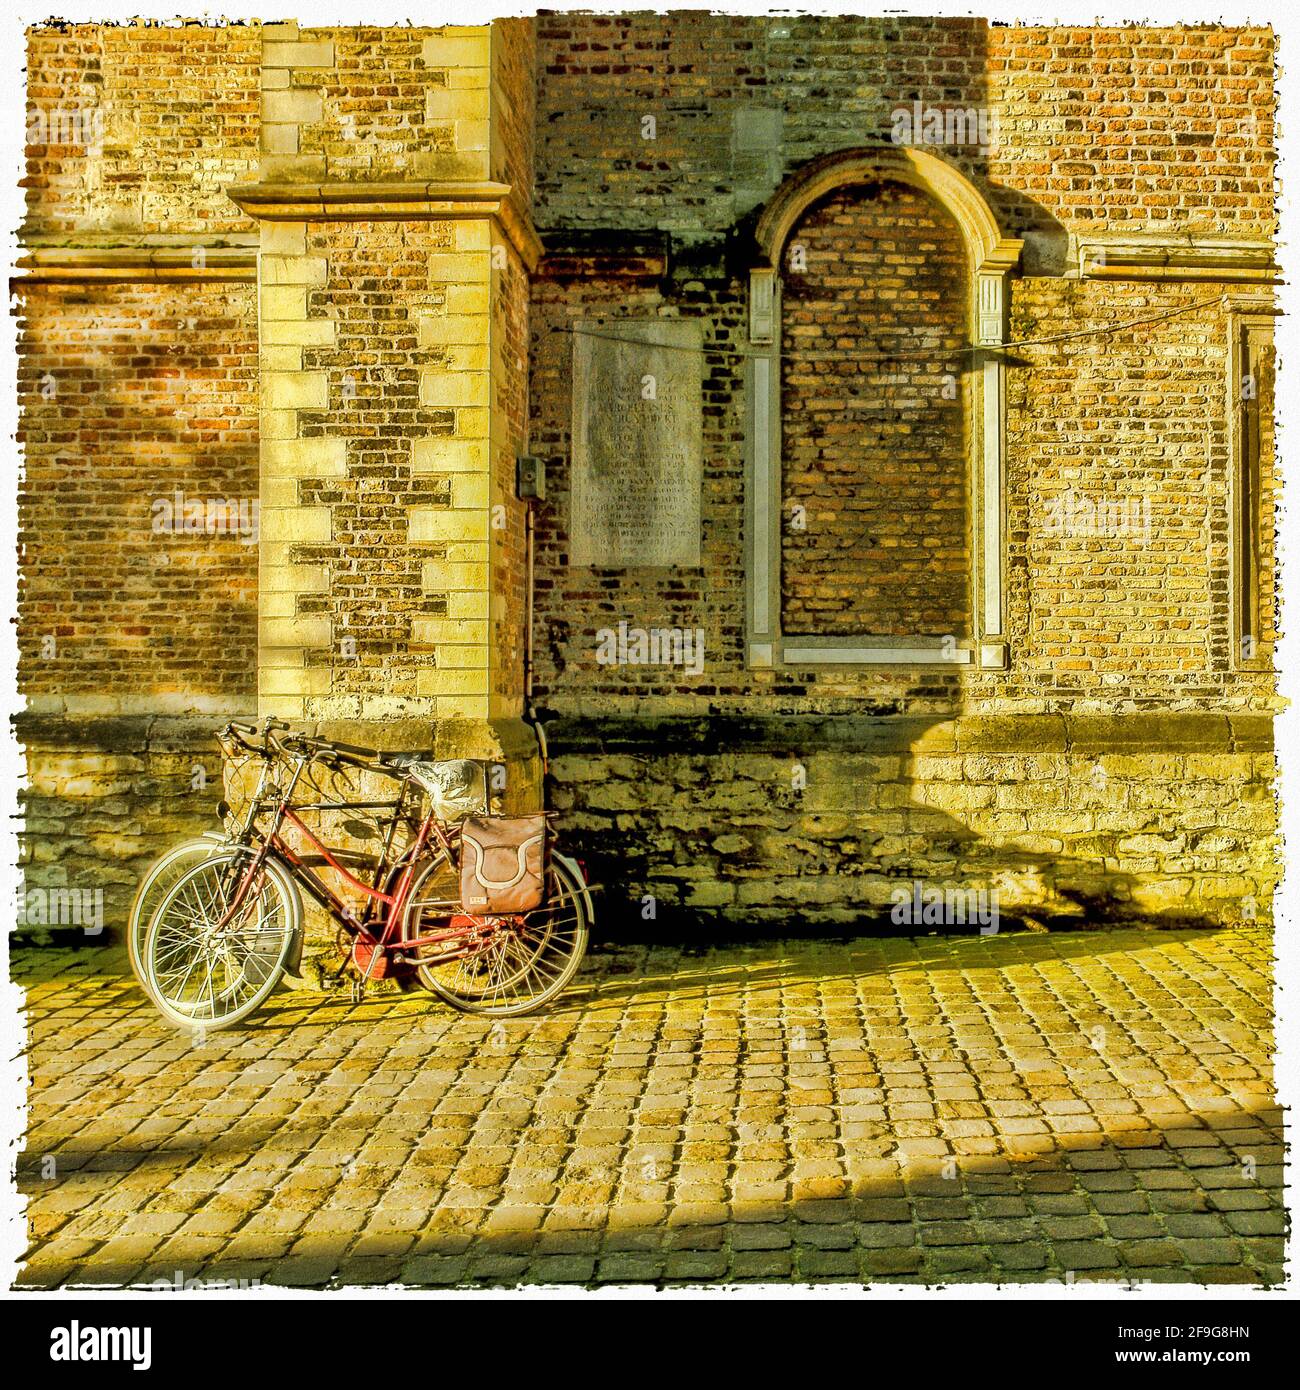 Vecchia bicicletta abbandonata nella parte vecchia della città Foto Stock